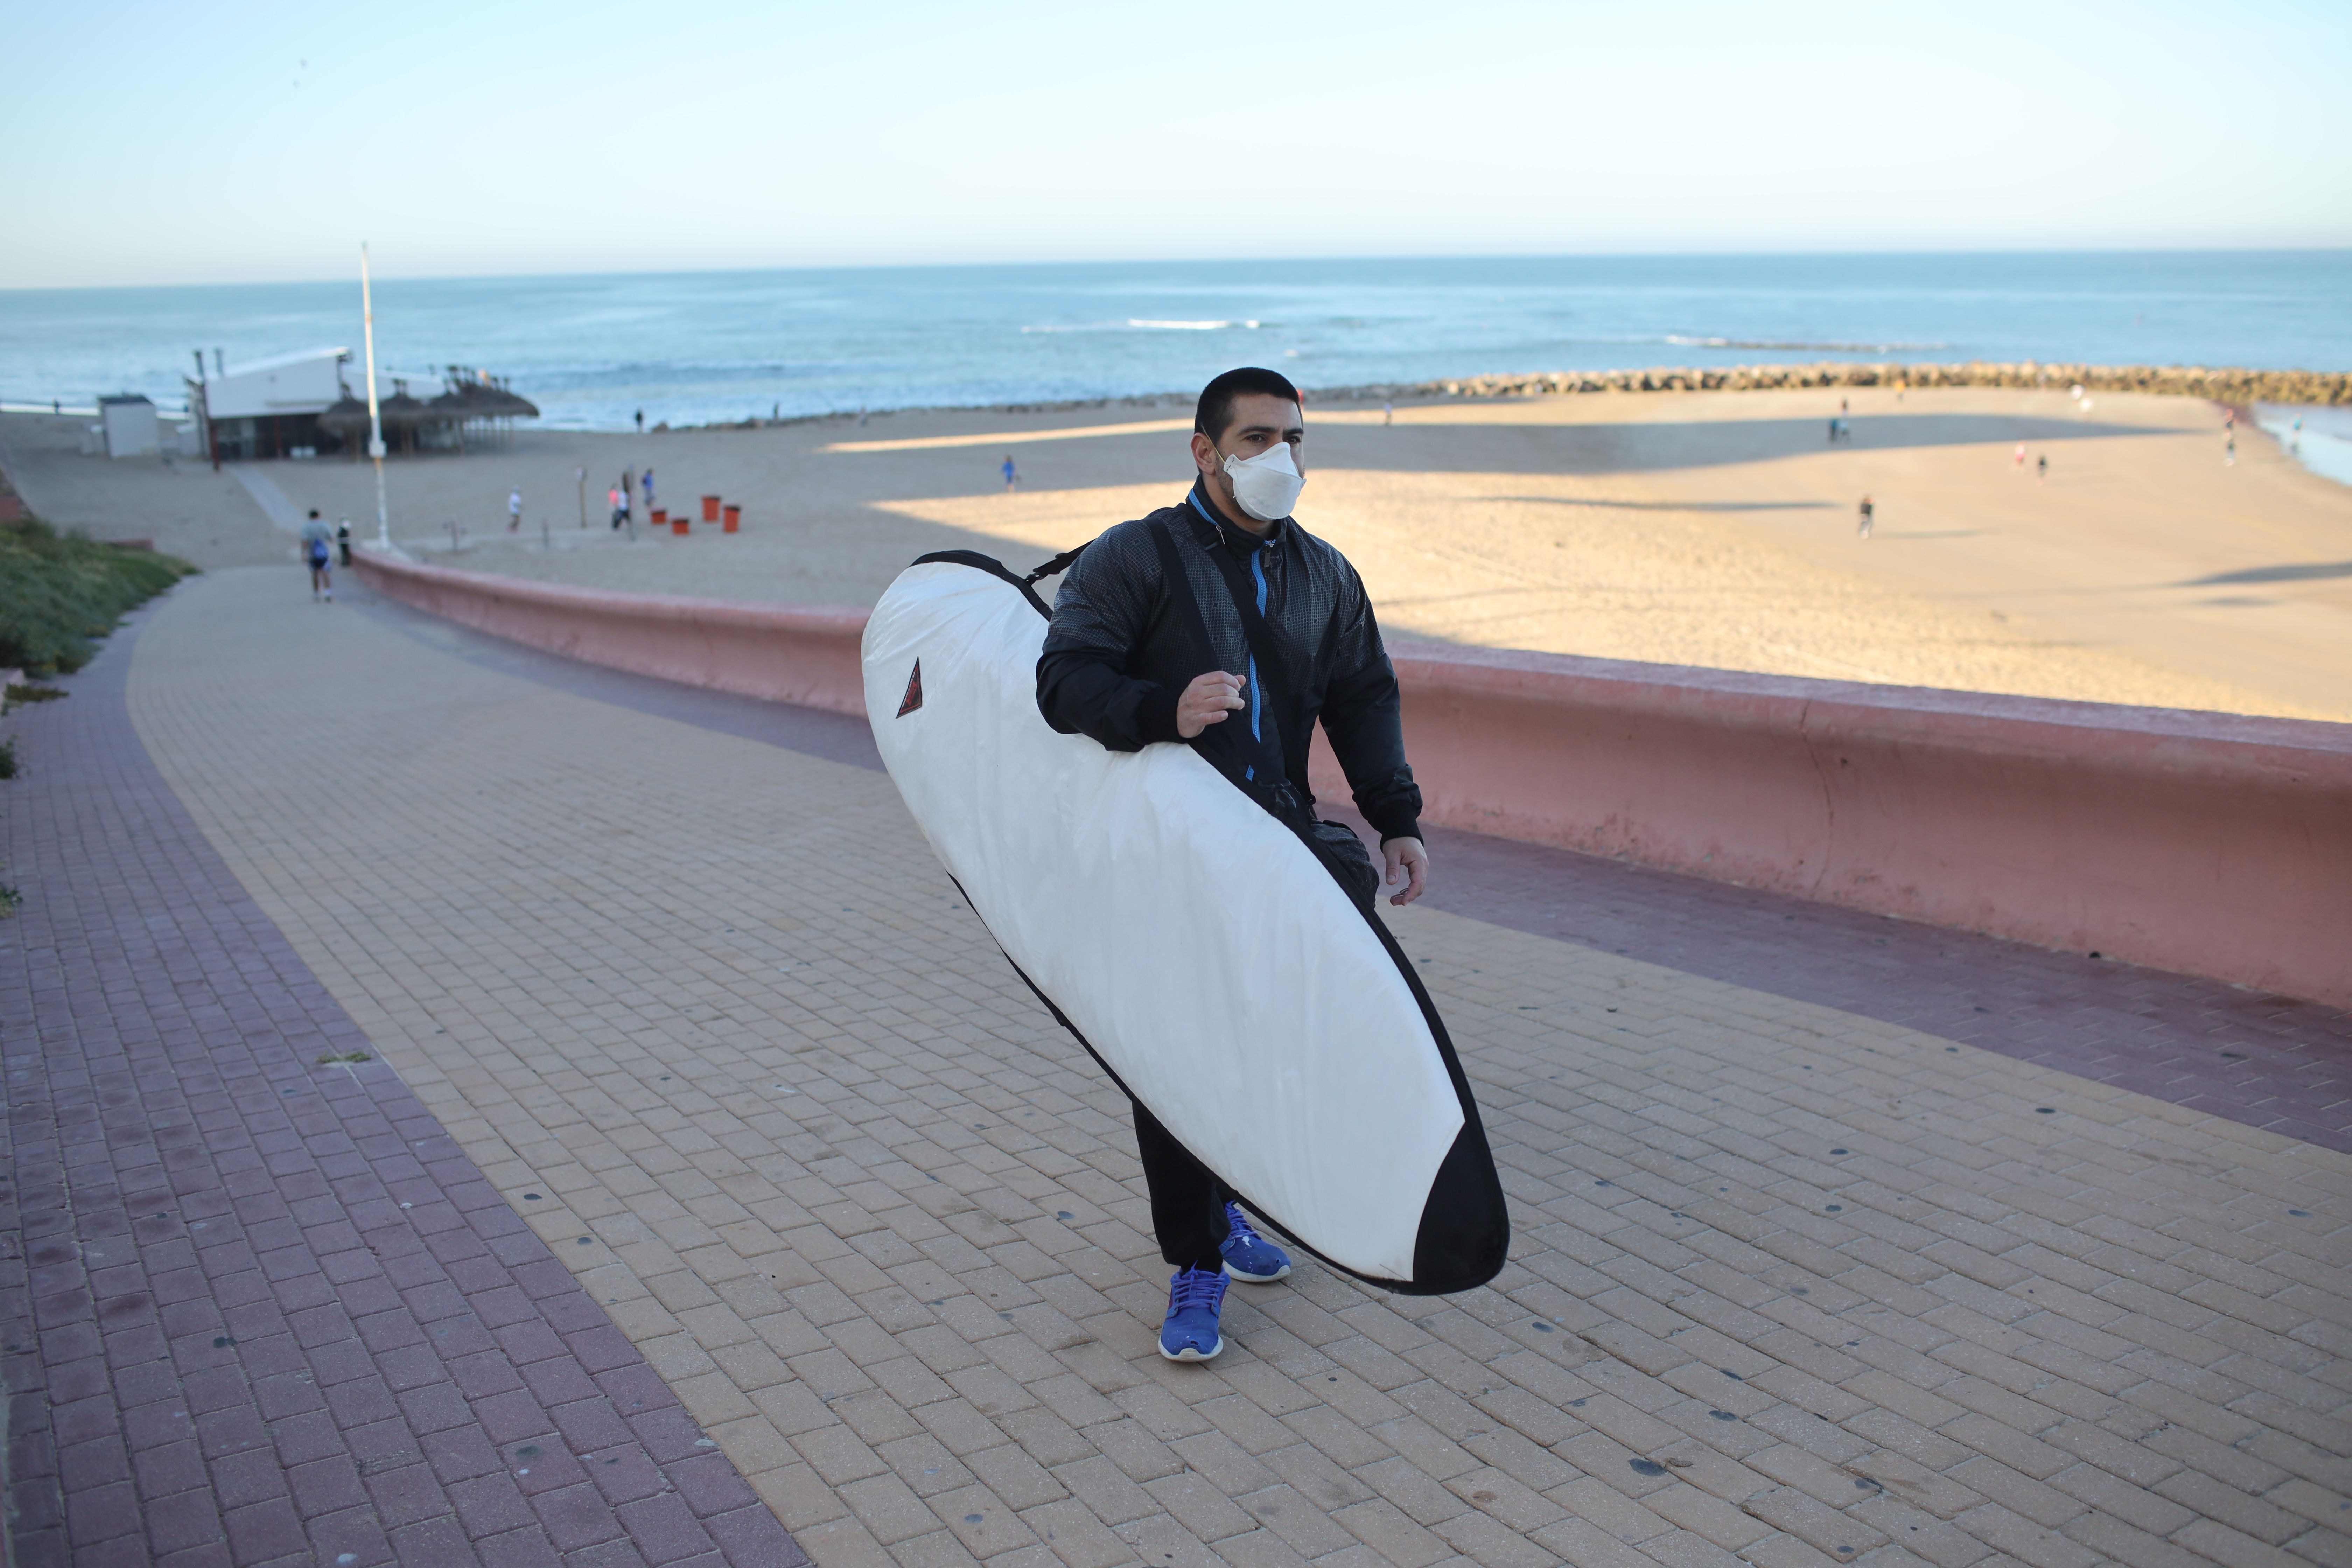 Un surfista abandona la playa, en Cádiz, el fin de semana pasado. FOTO: JUAN CARLOS TORO